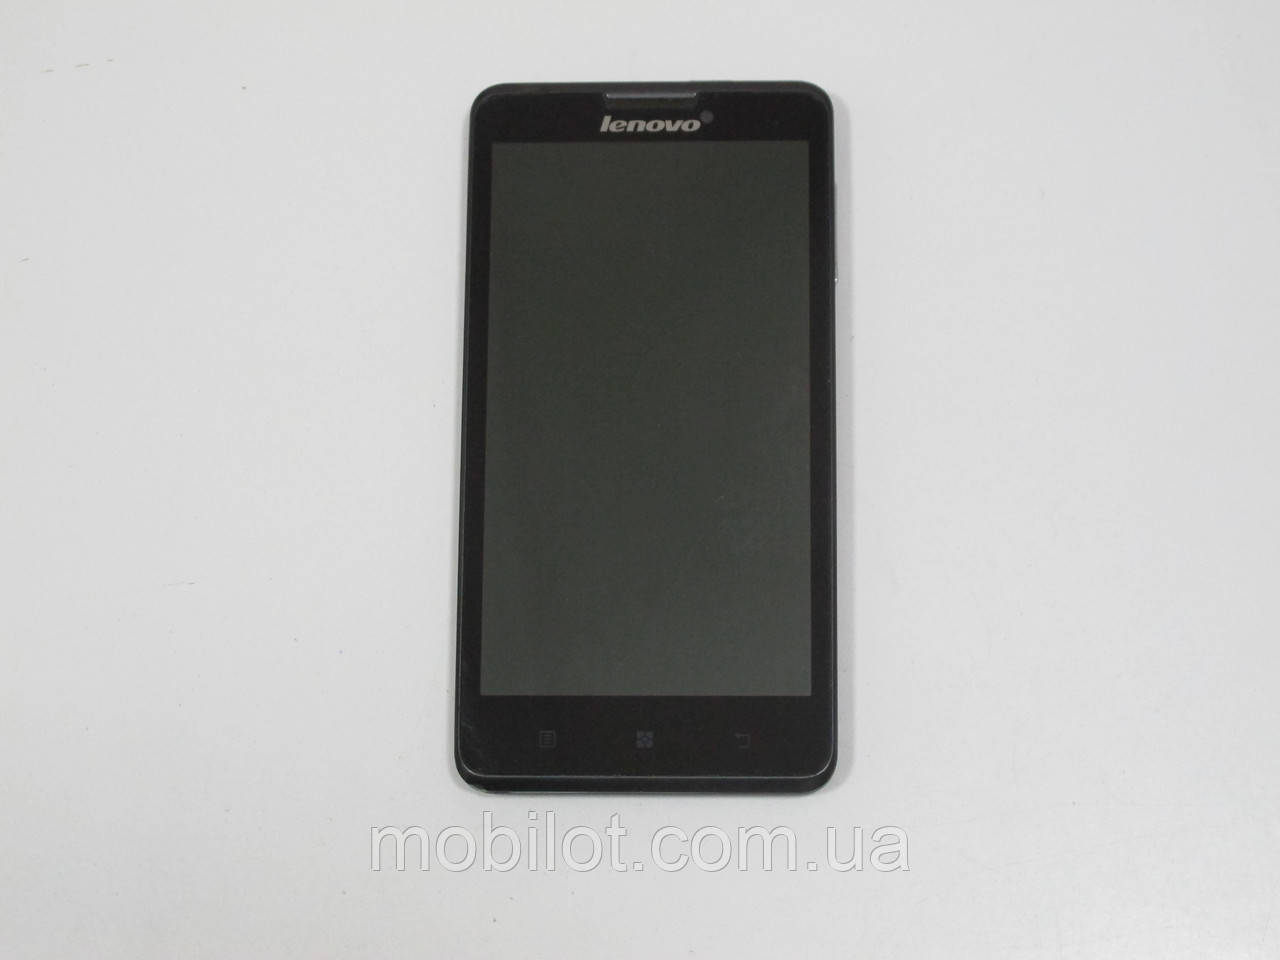 Мобильный телефон Lenovo P780 Deep Black (TZ-1338) На запчасти